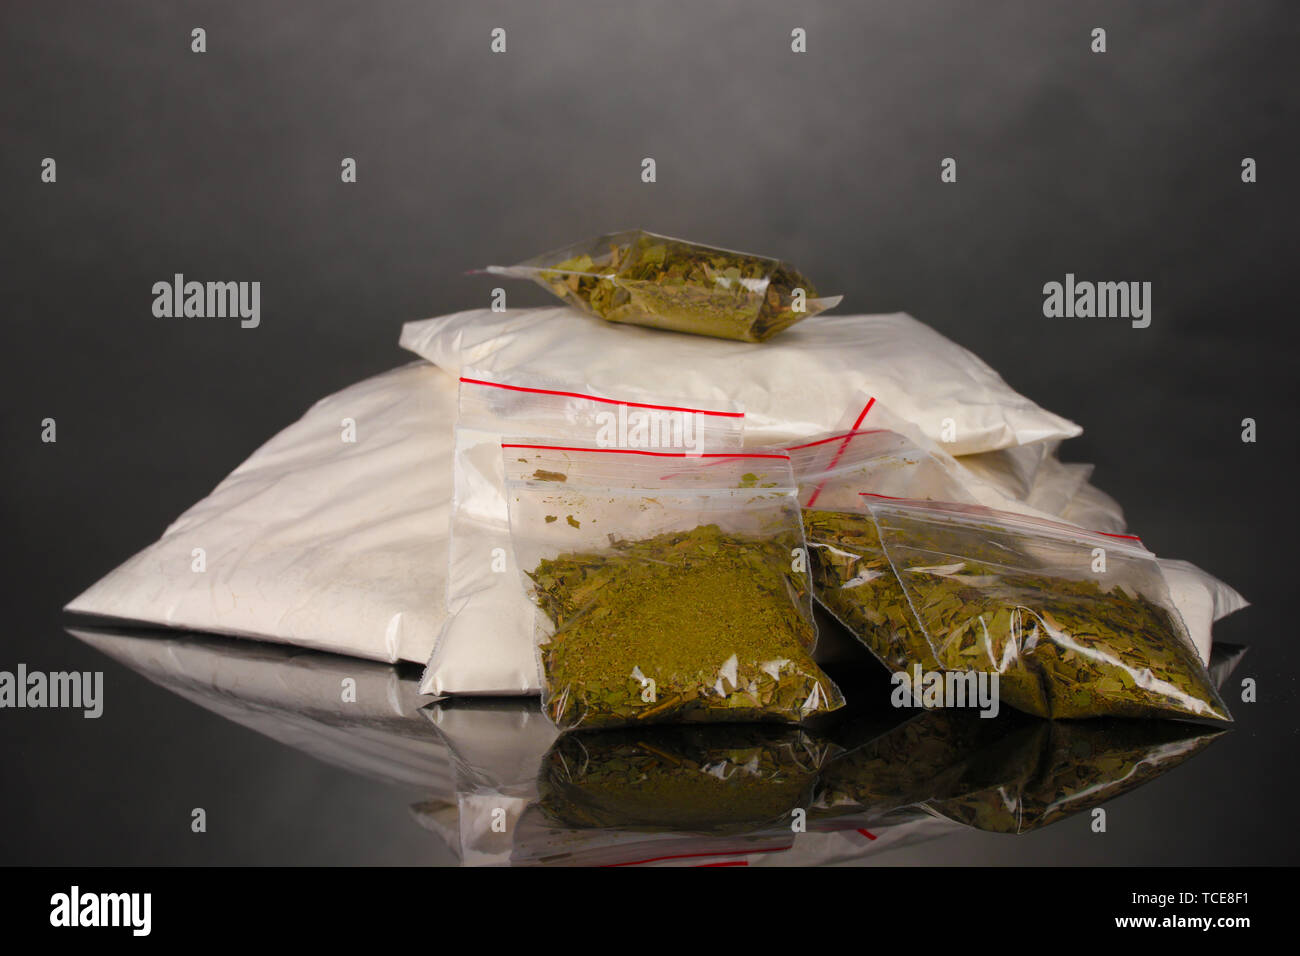 La cocaïne et la marihuana en paquets sur fond gris Banque D'Images